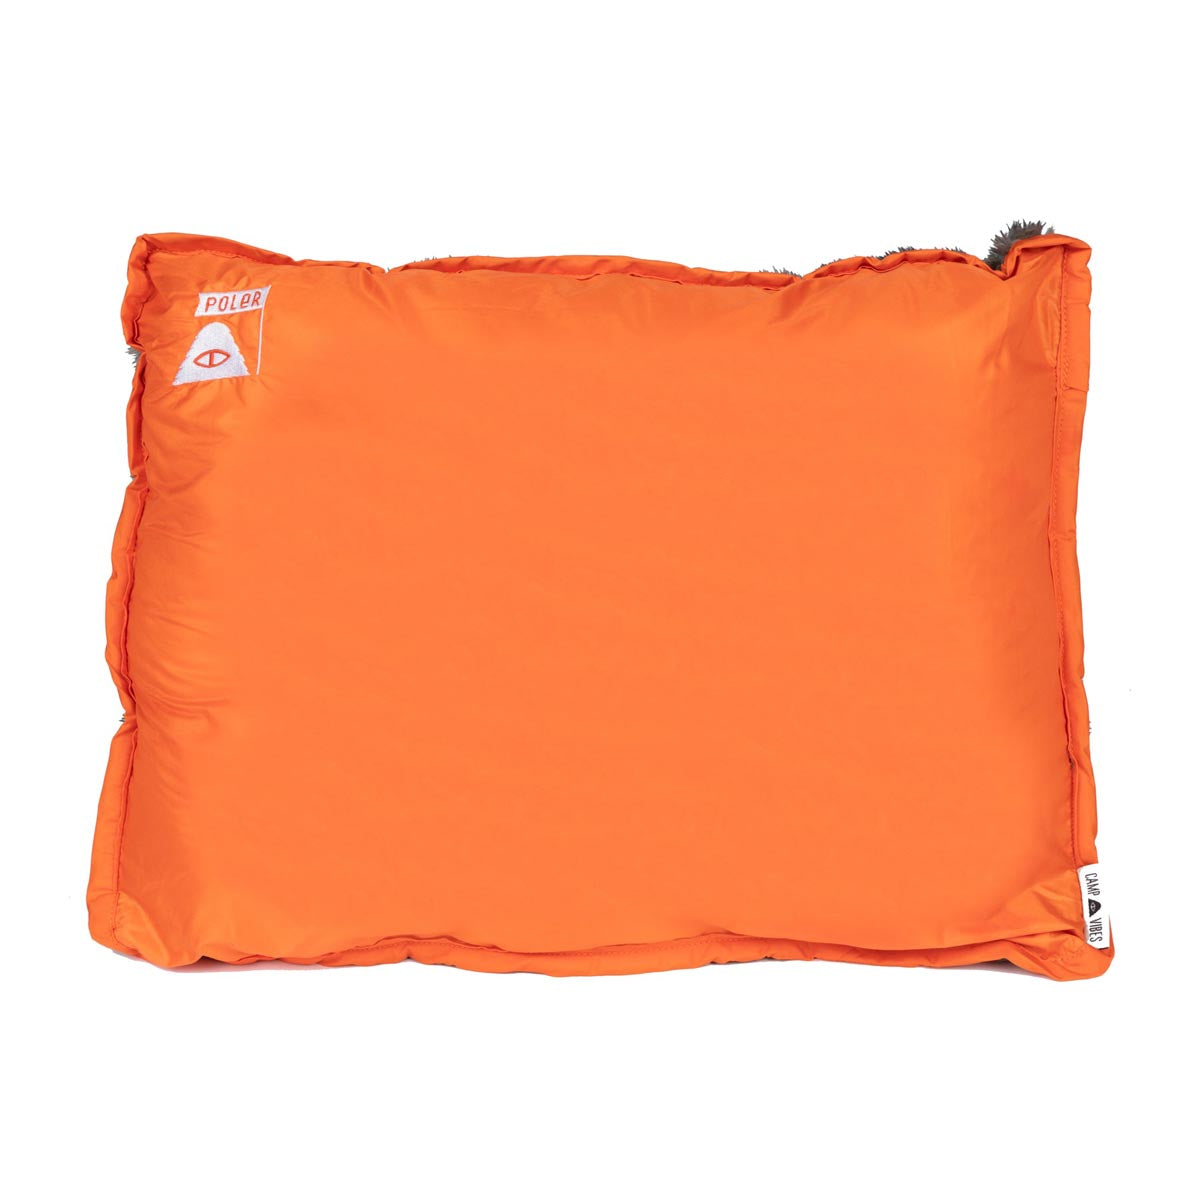 Poler Camp Pillow - Orange image 1